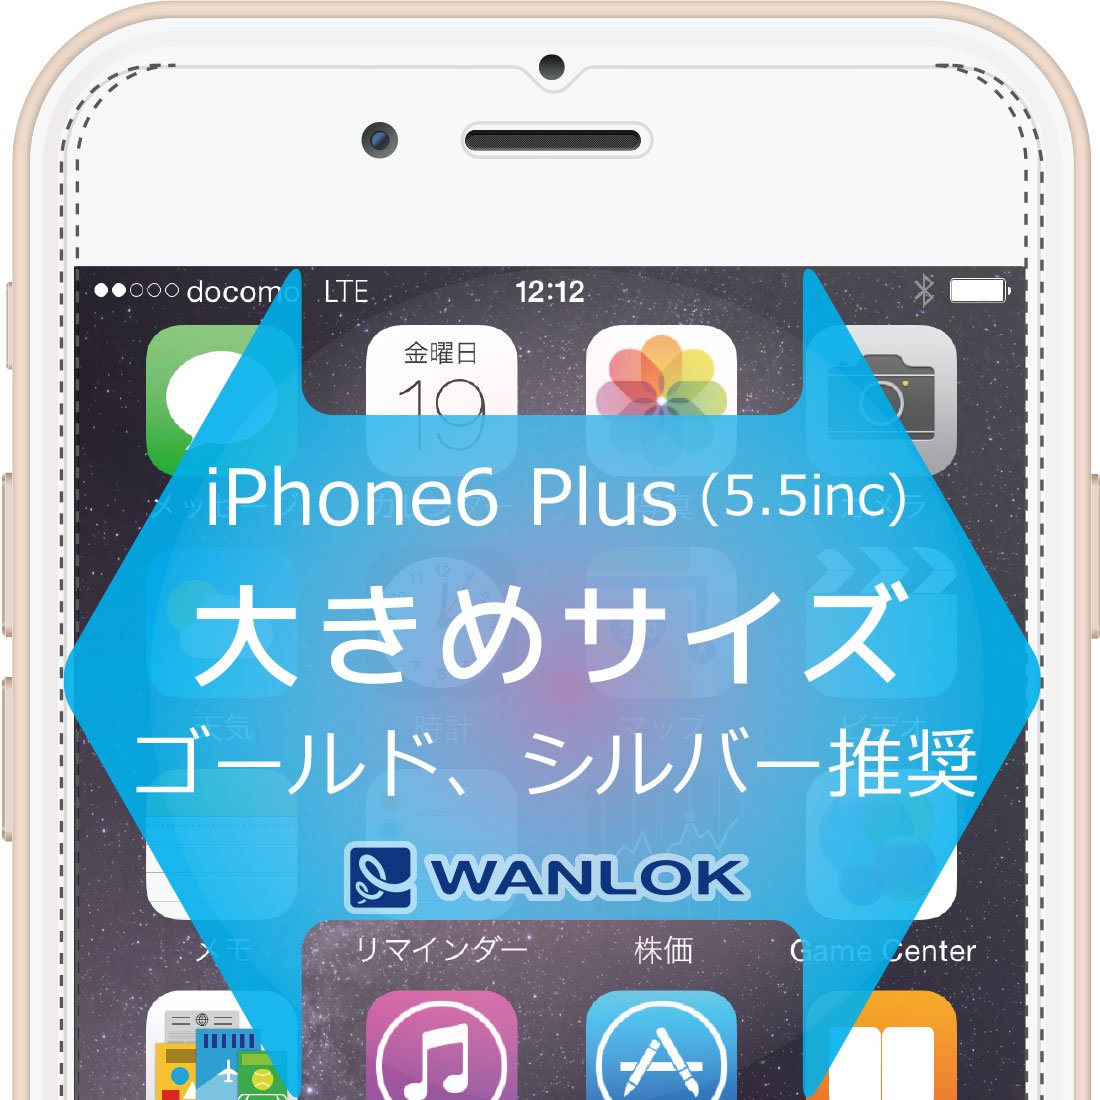 スマートフォン - WANLOK.com ワンロック公式サイト